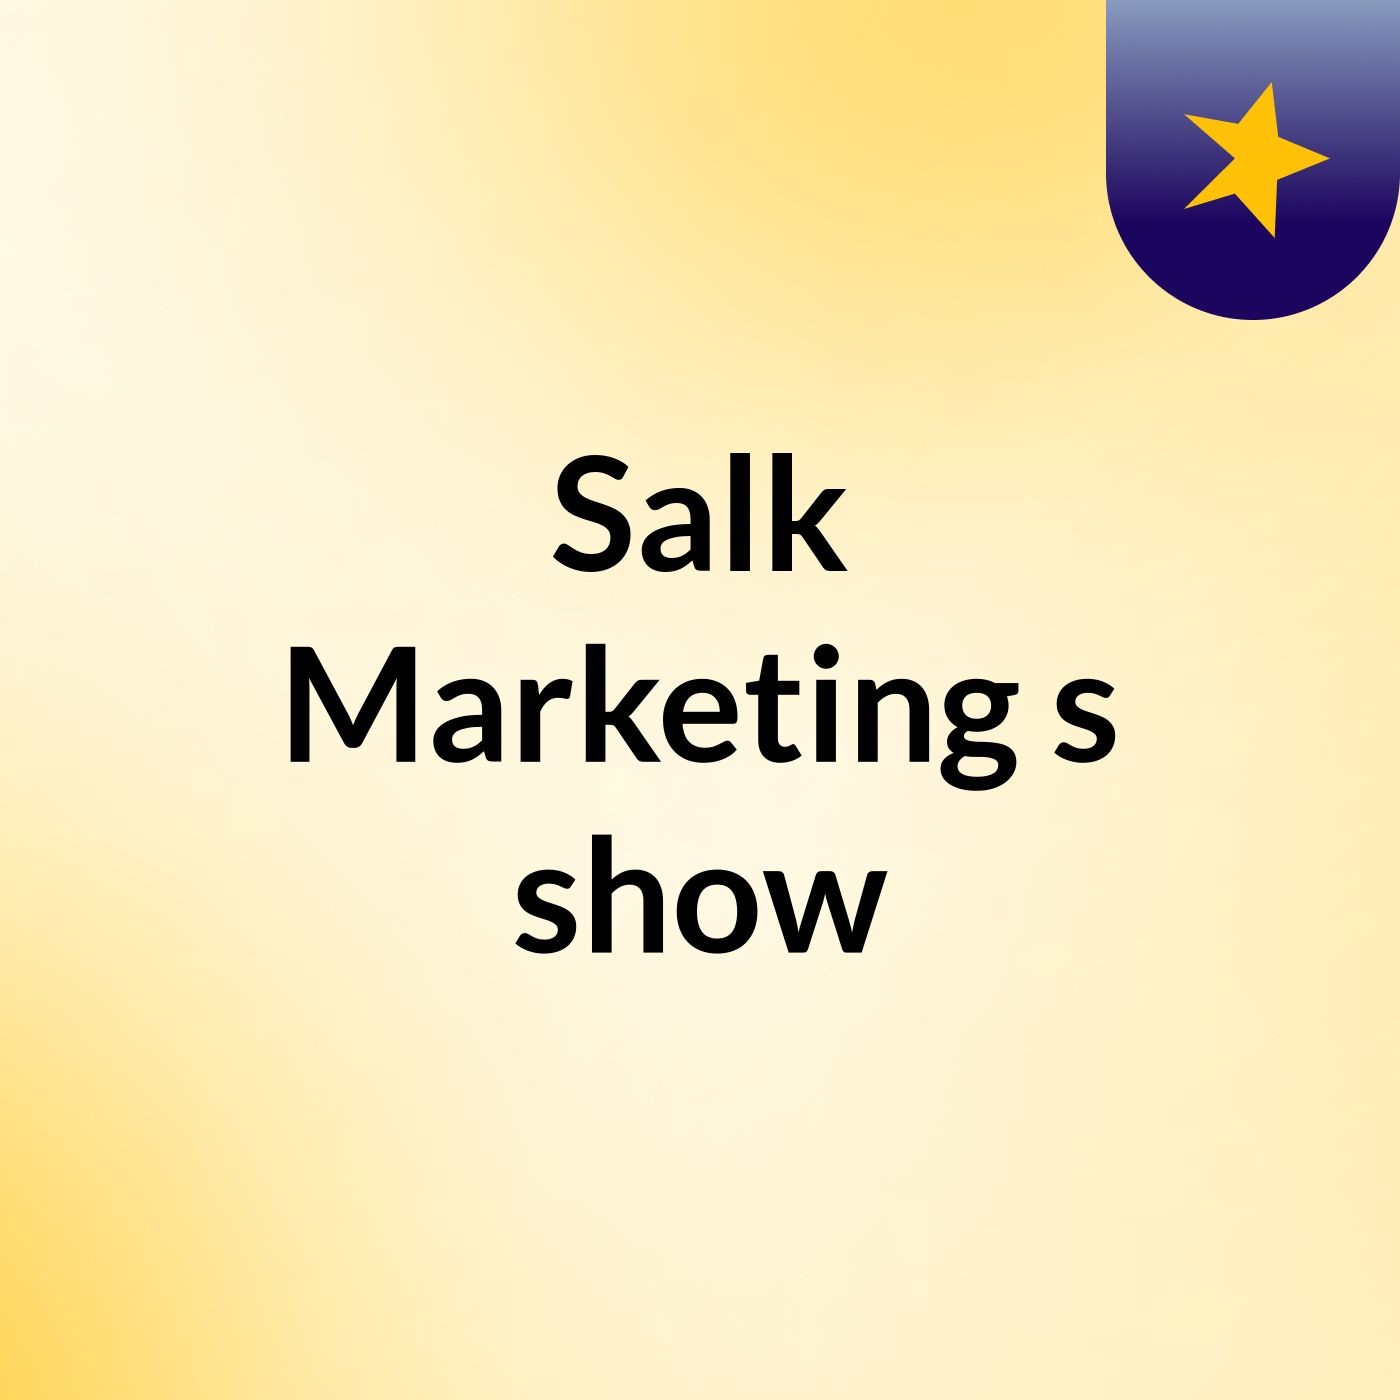 Salk Marketing's show